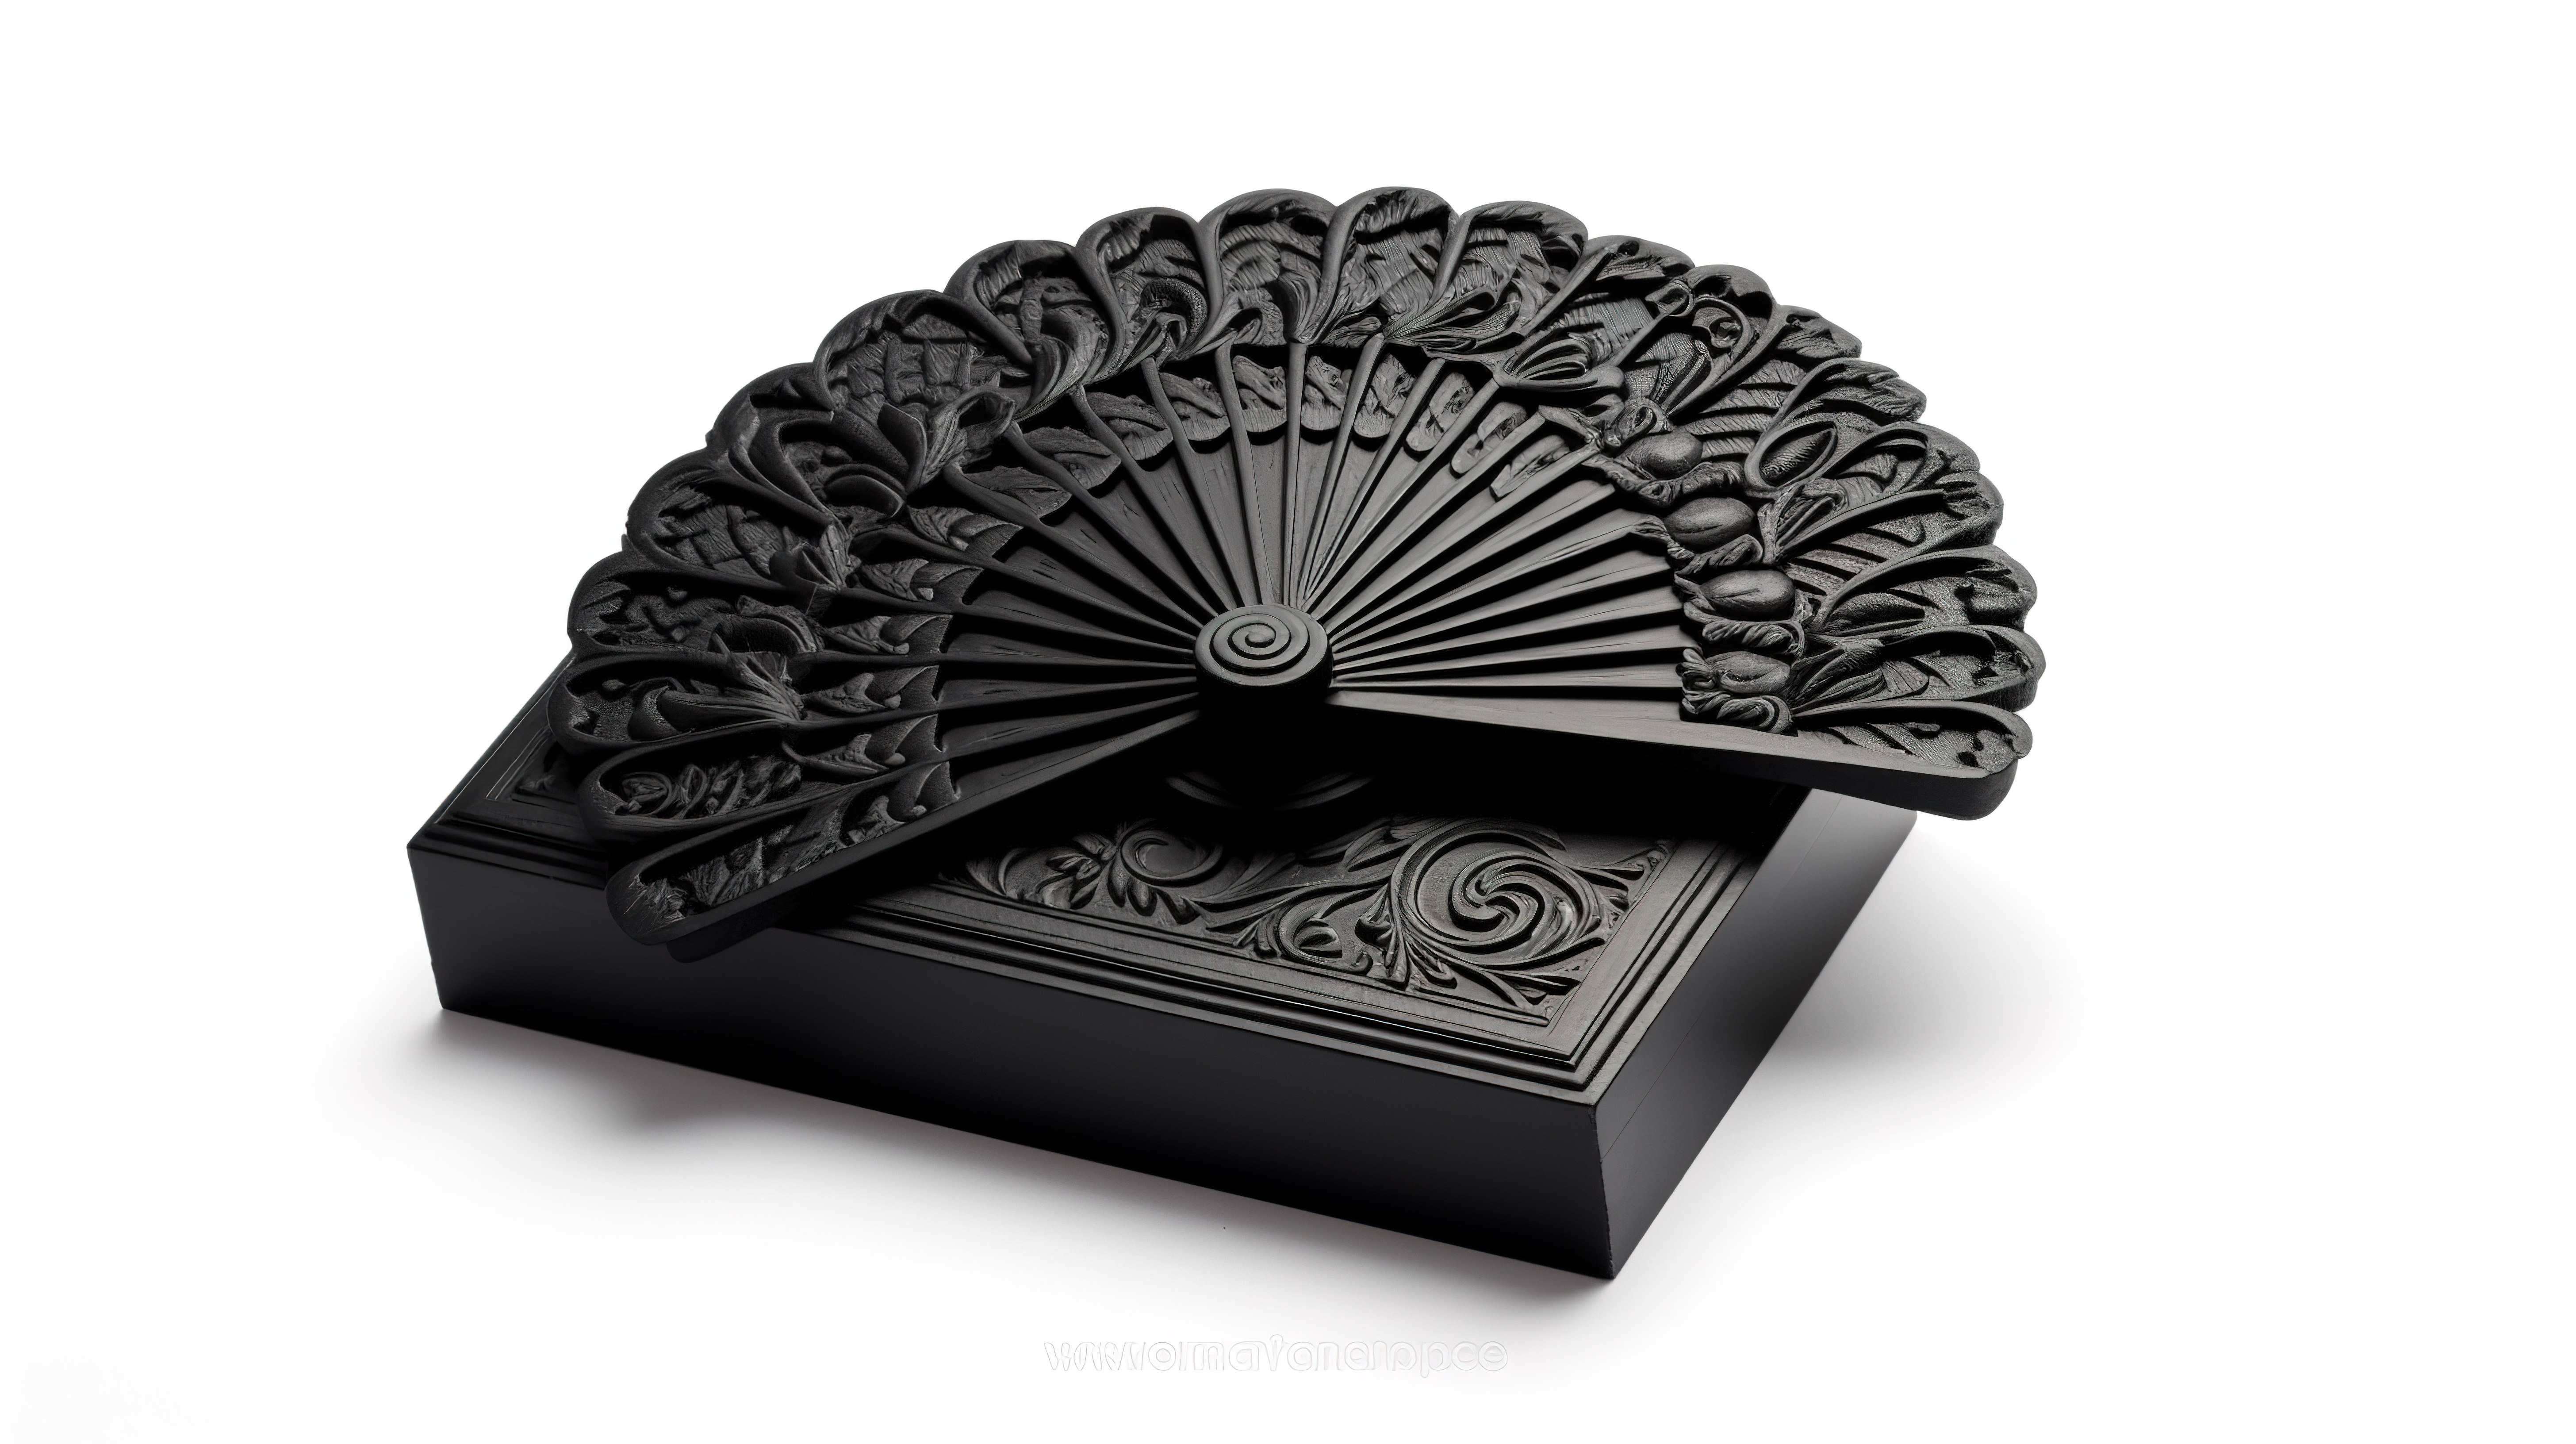 白色背景展示了黑色木手扇的 3D 渲染，带有精致的雕刻细节和配套的盒子图片